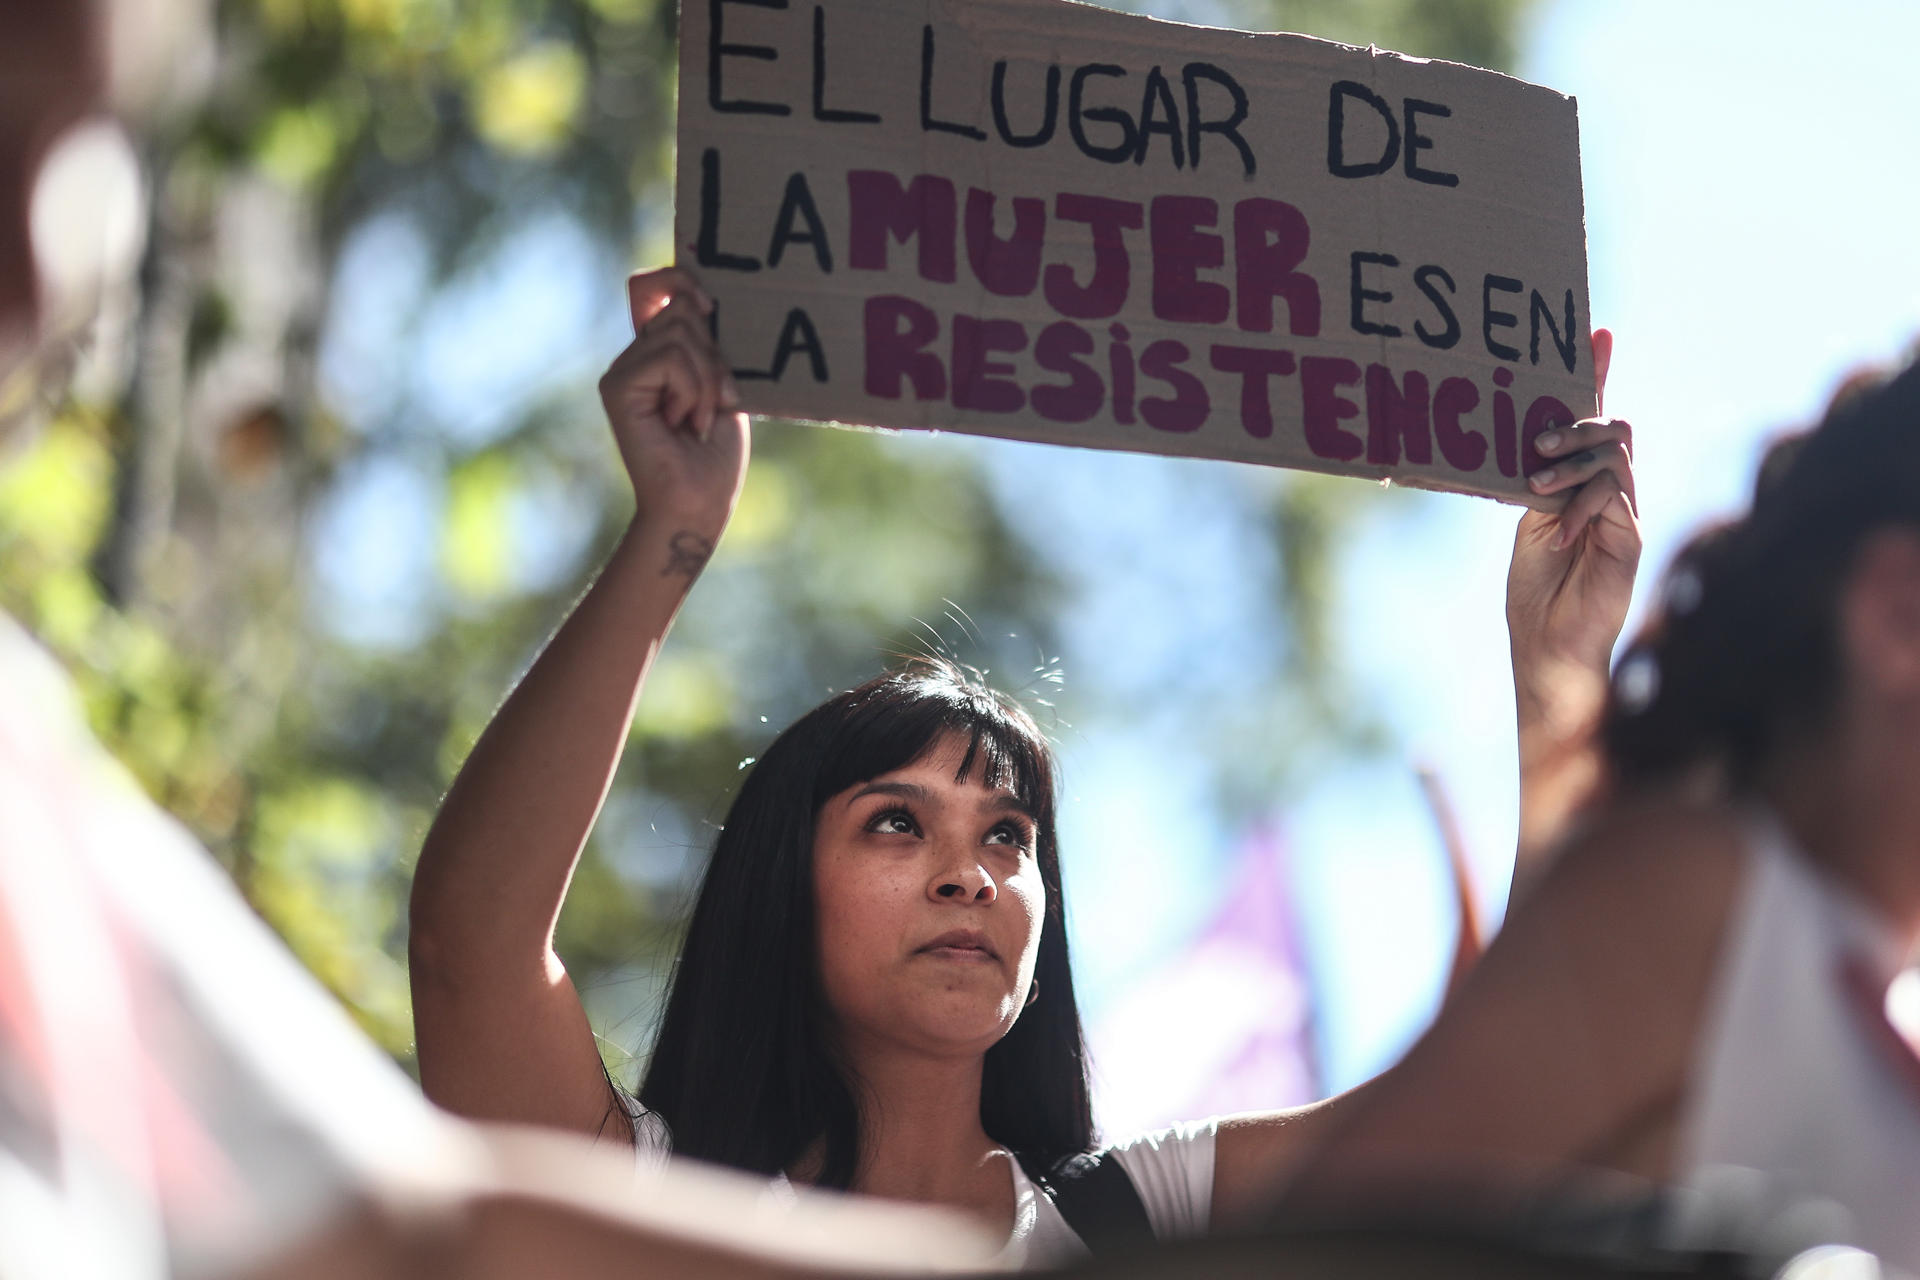 Vista de una manifestante que muestra un cartel de protesta durante una movilización de reivindicación de los derechos de las mujeres con diversos mensajes a favor del feminismo, en una fotografía de archivo. EFE/Juan Ignacio Roncoroni